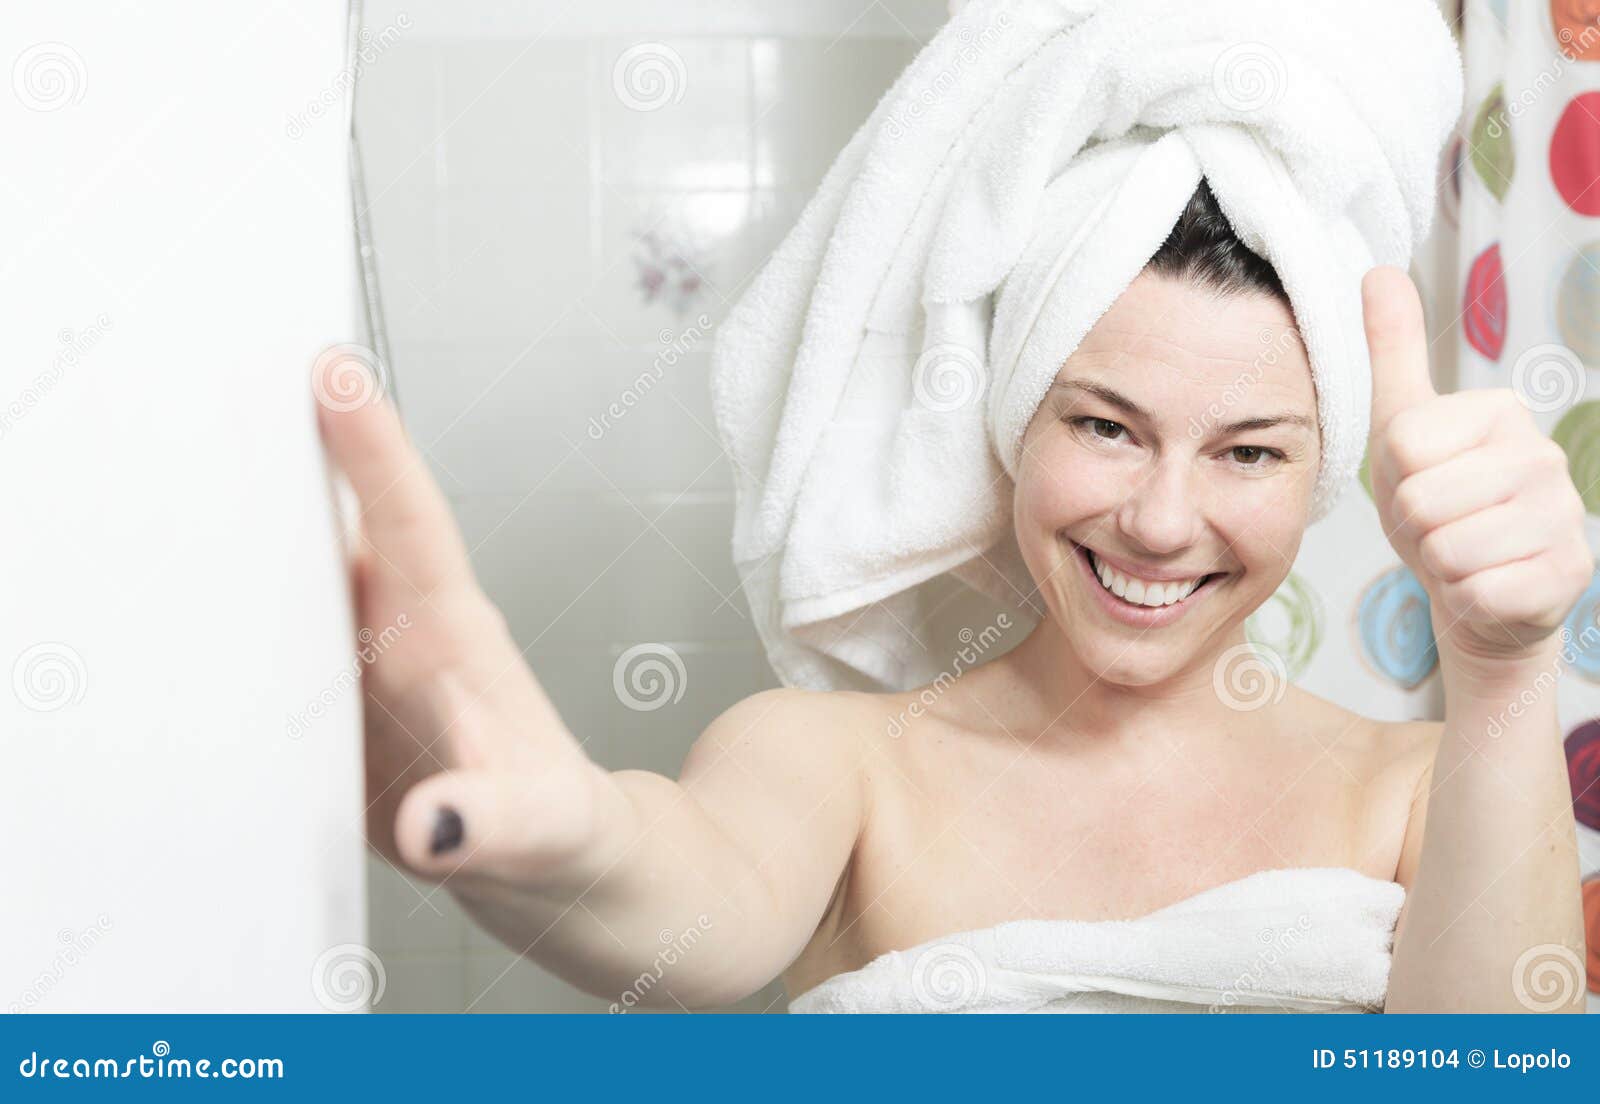 Жены после ванной. Девушка в полотенце. Женщина с полотенцем на голове. Красивая девушка в полотенце. Девушка после душа.